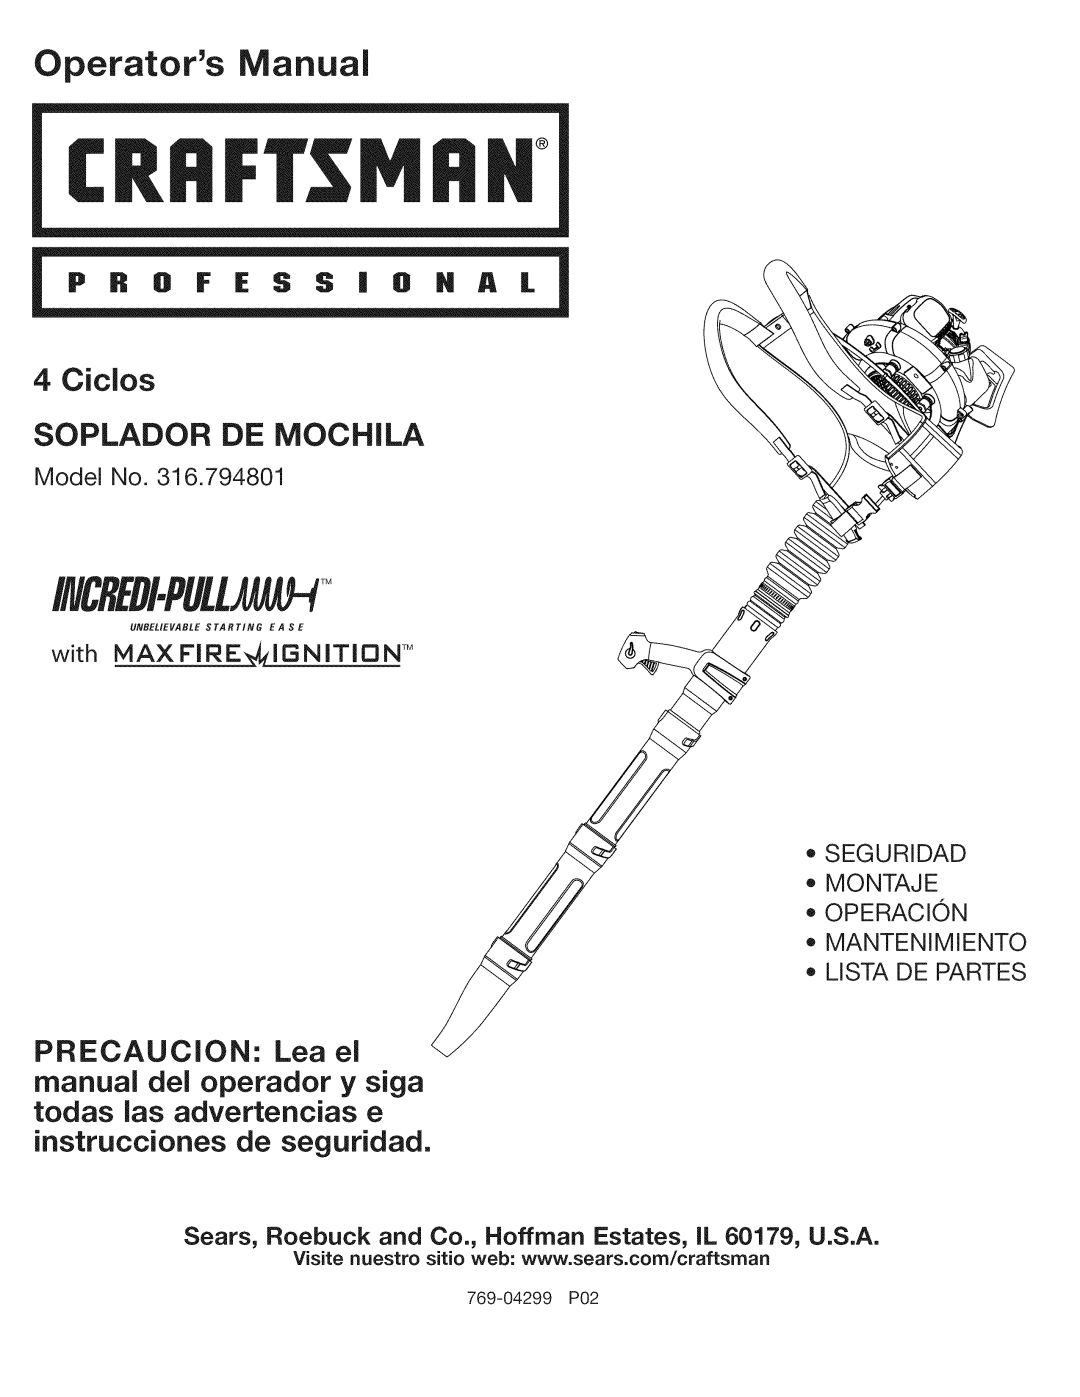 Craftsman 316.794801 manual 4Ciclos SOPLADOR DE MOCHILA, PRECAUCJON: Lea eJ, instrucciones de seguridad, Operators Manual 